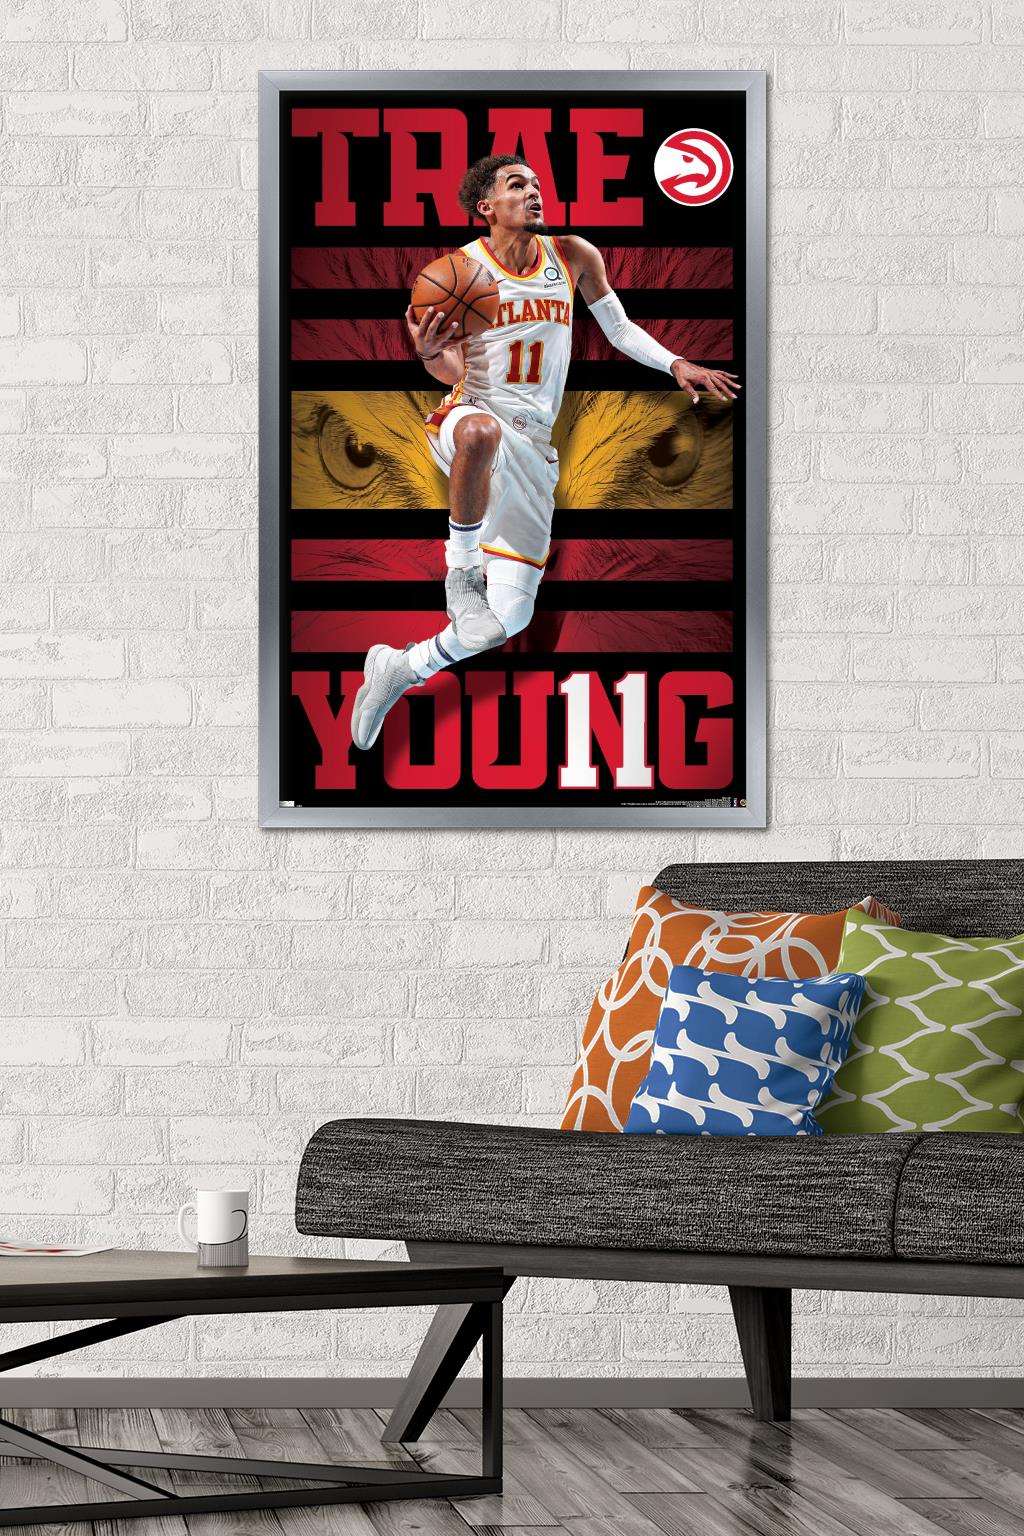 NBA Atlanta Hawks Trae Young 20 Wall Poster, 22.375